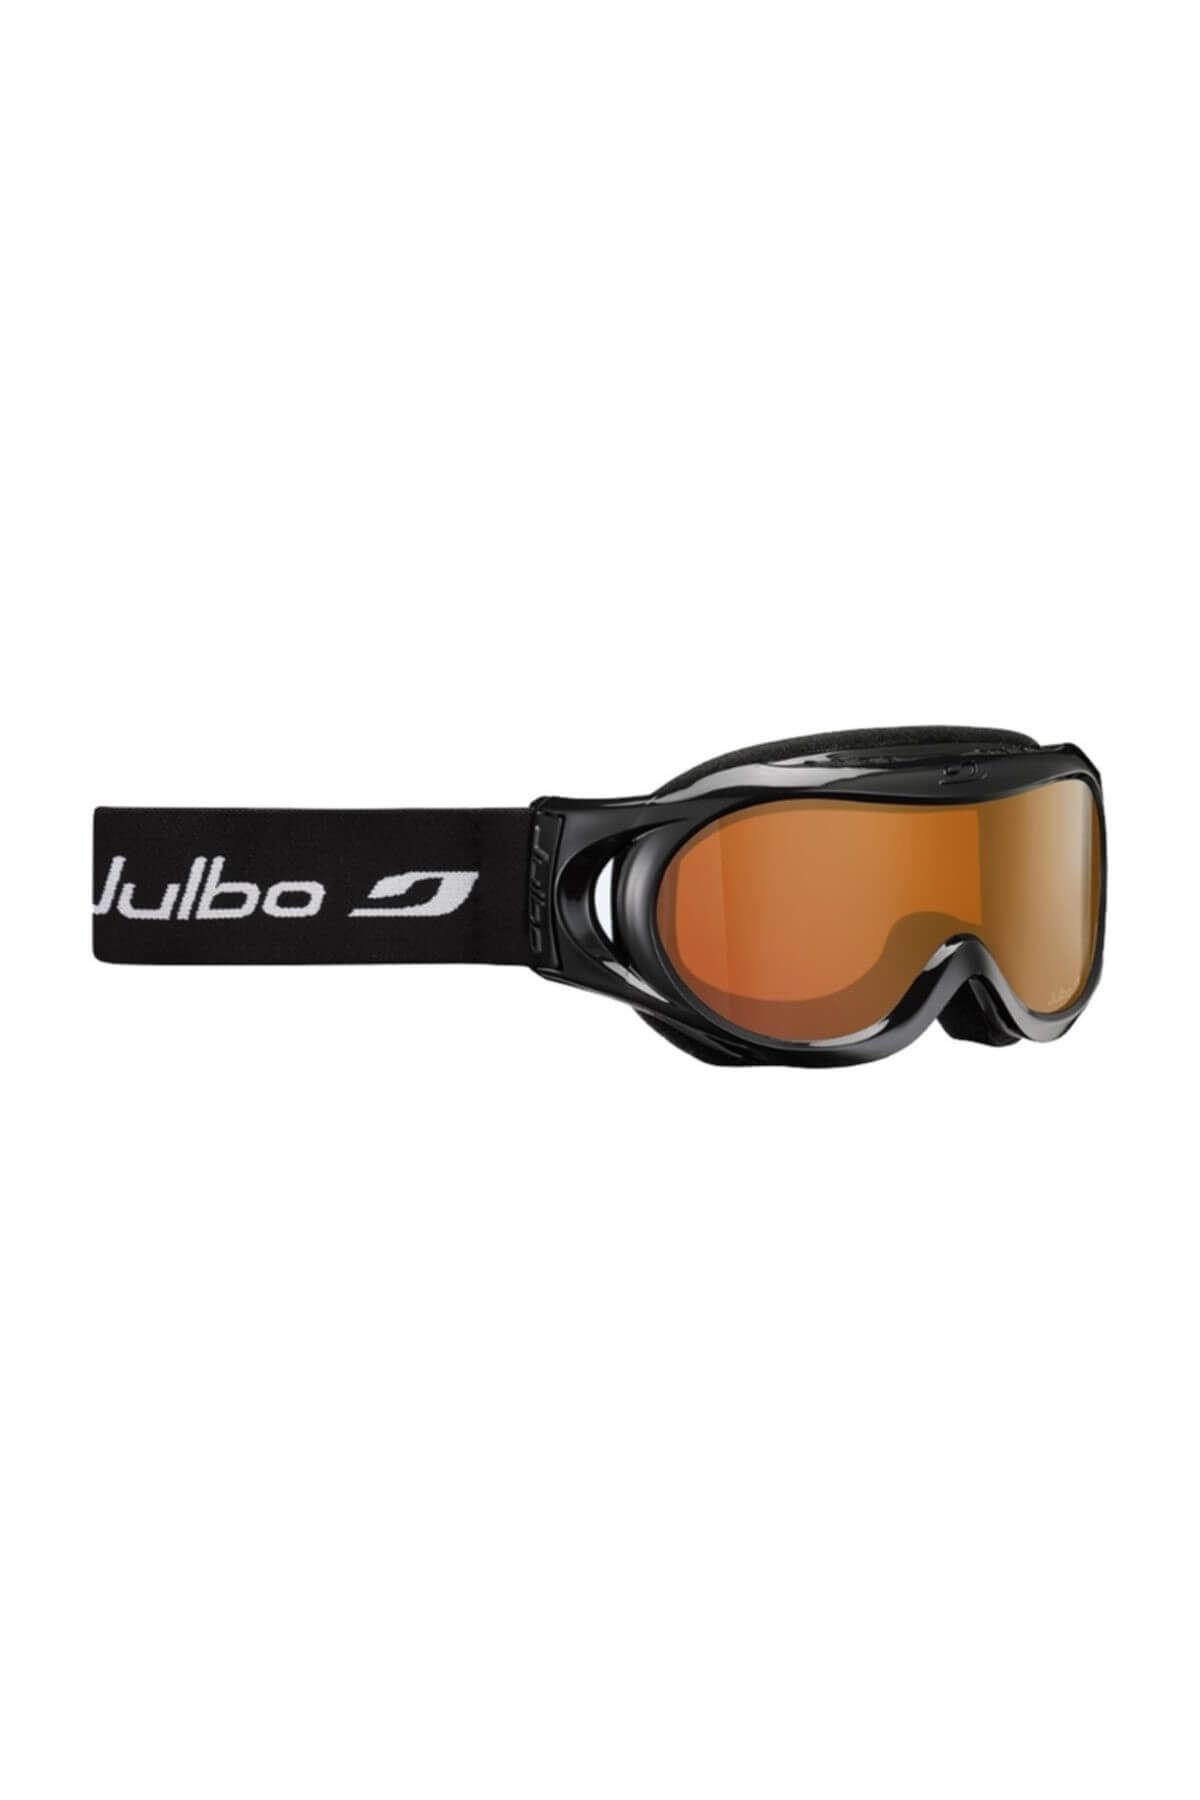 Julbo Noir E/Db Orange Kayak Gözlüğü